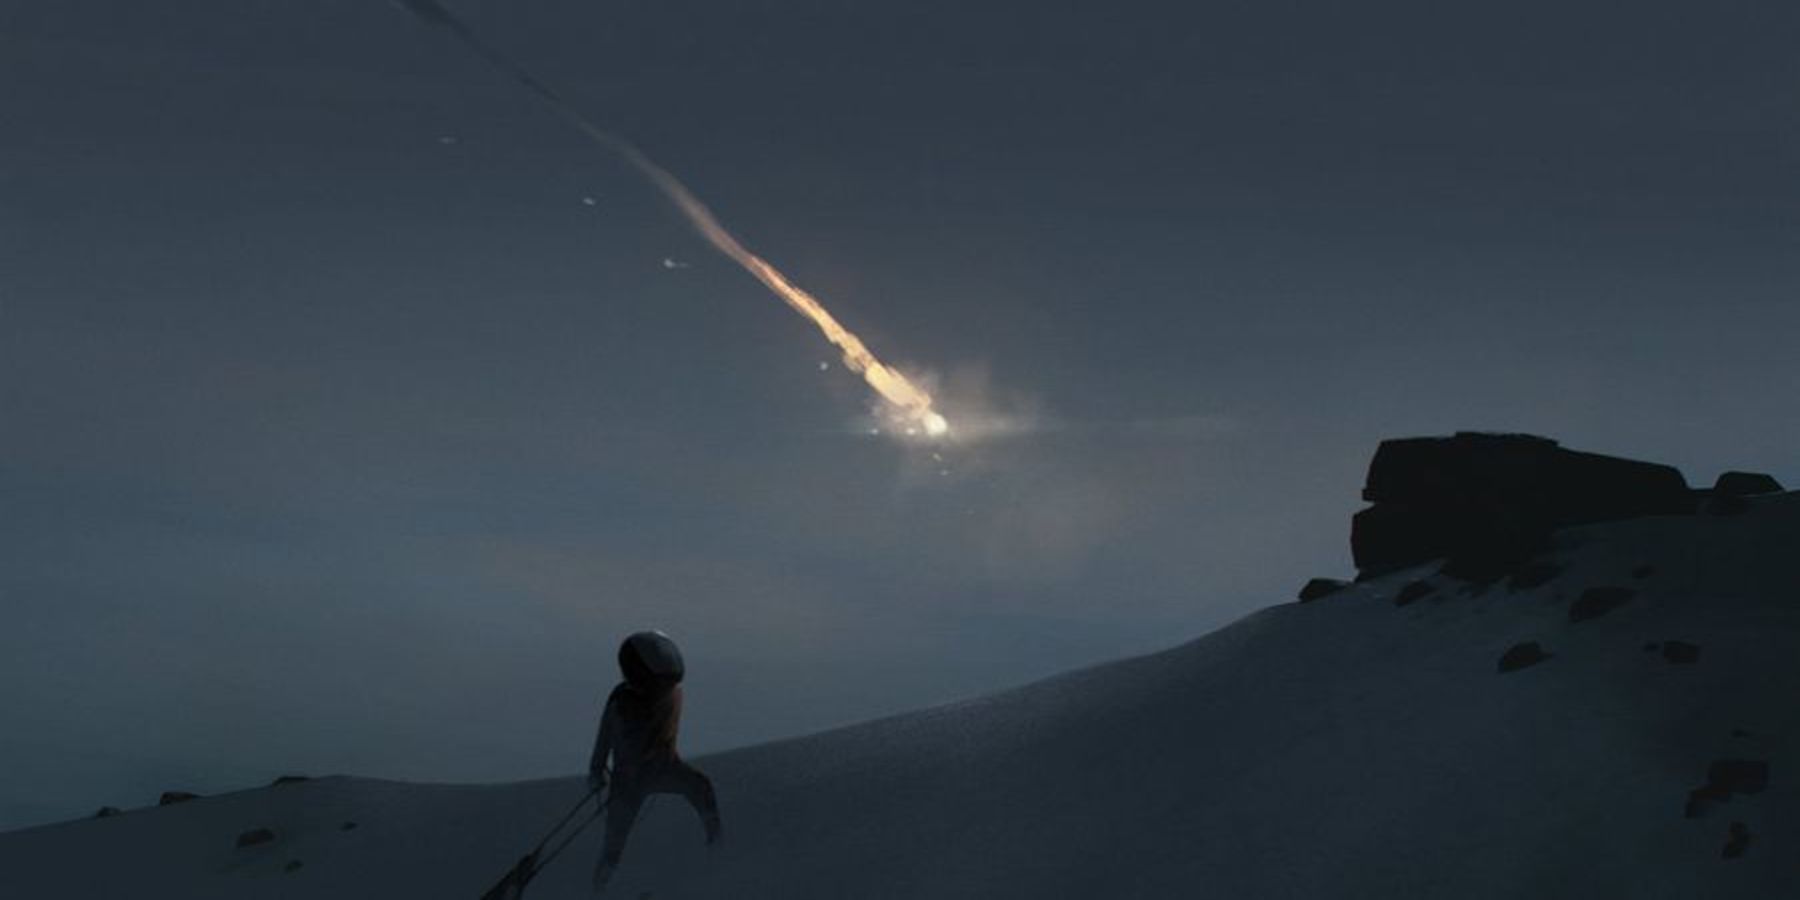 playdead-new-game-teaser-comet